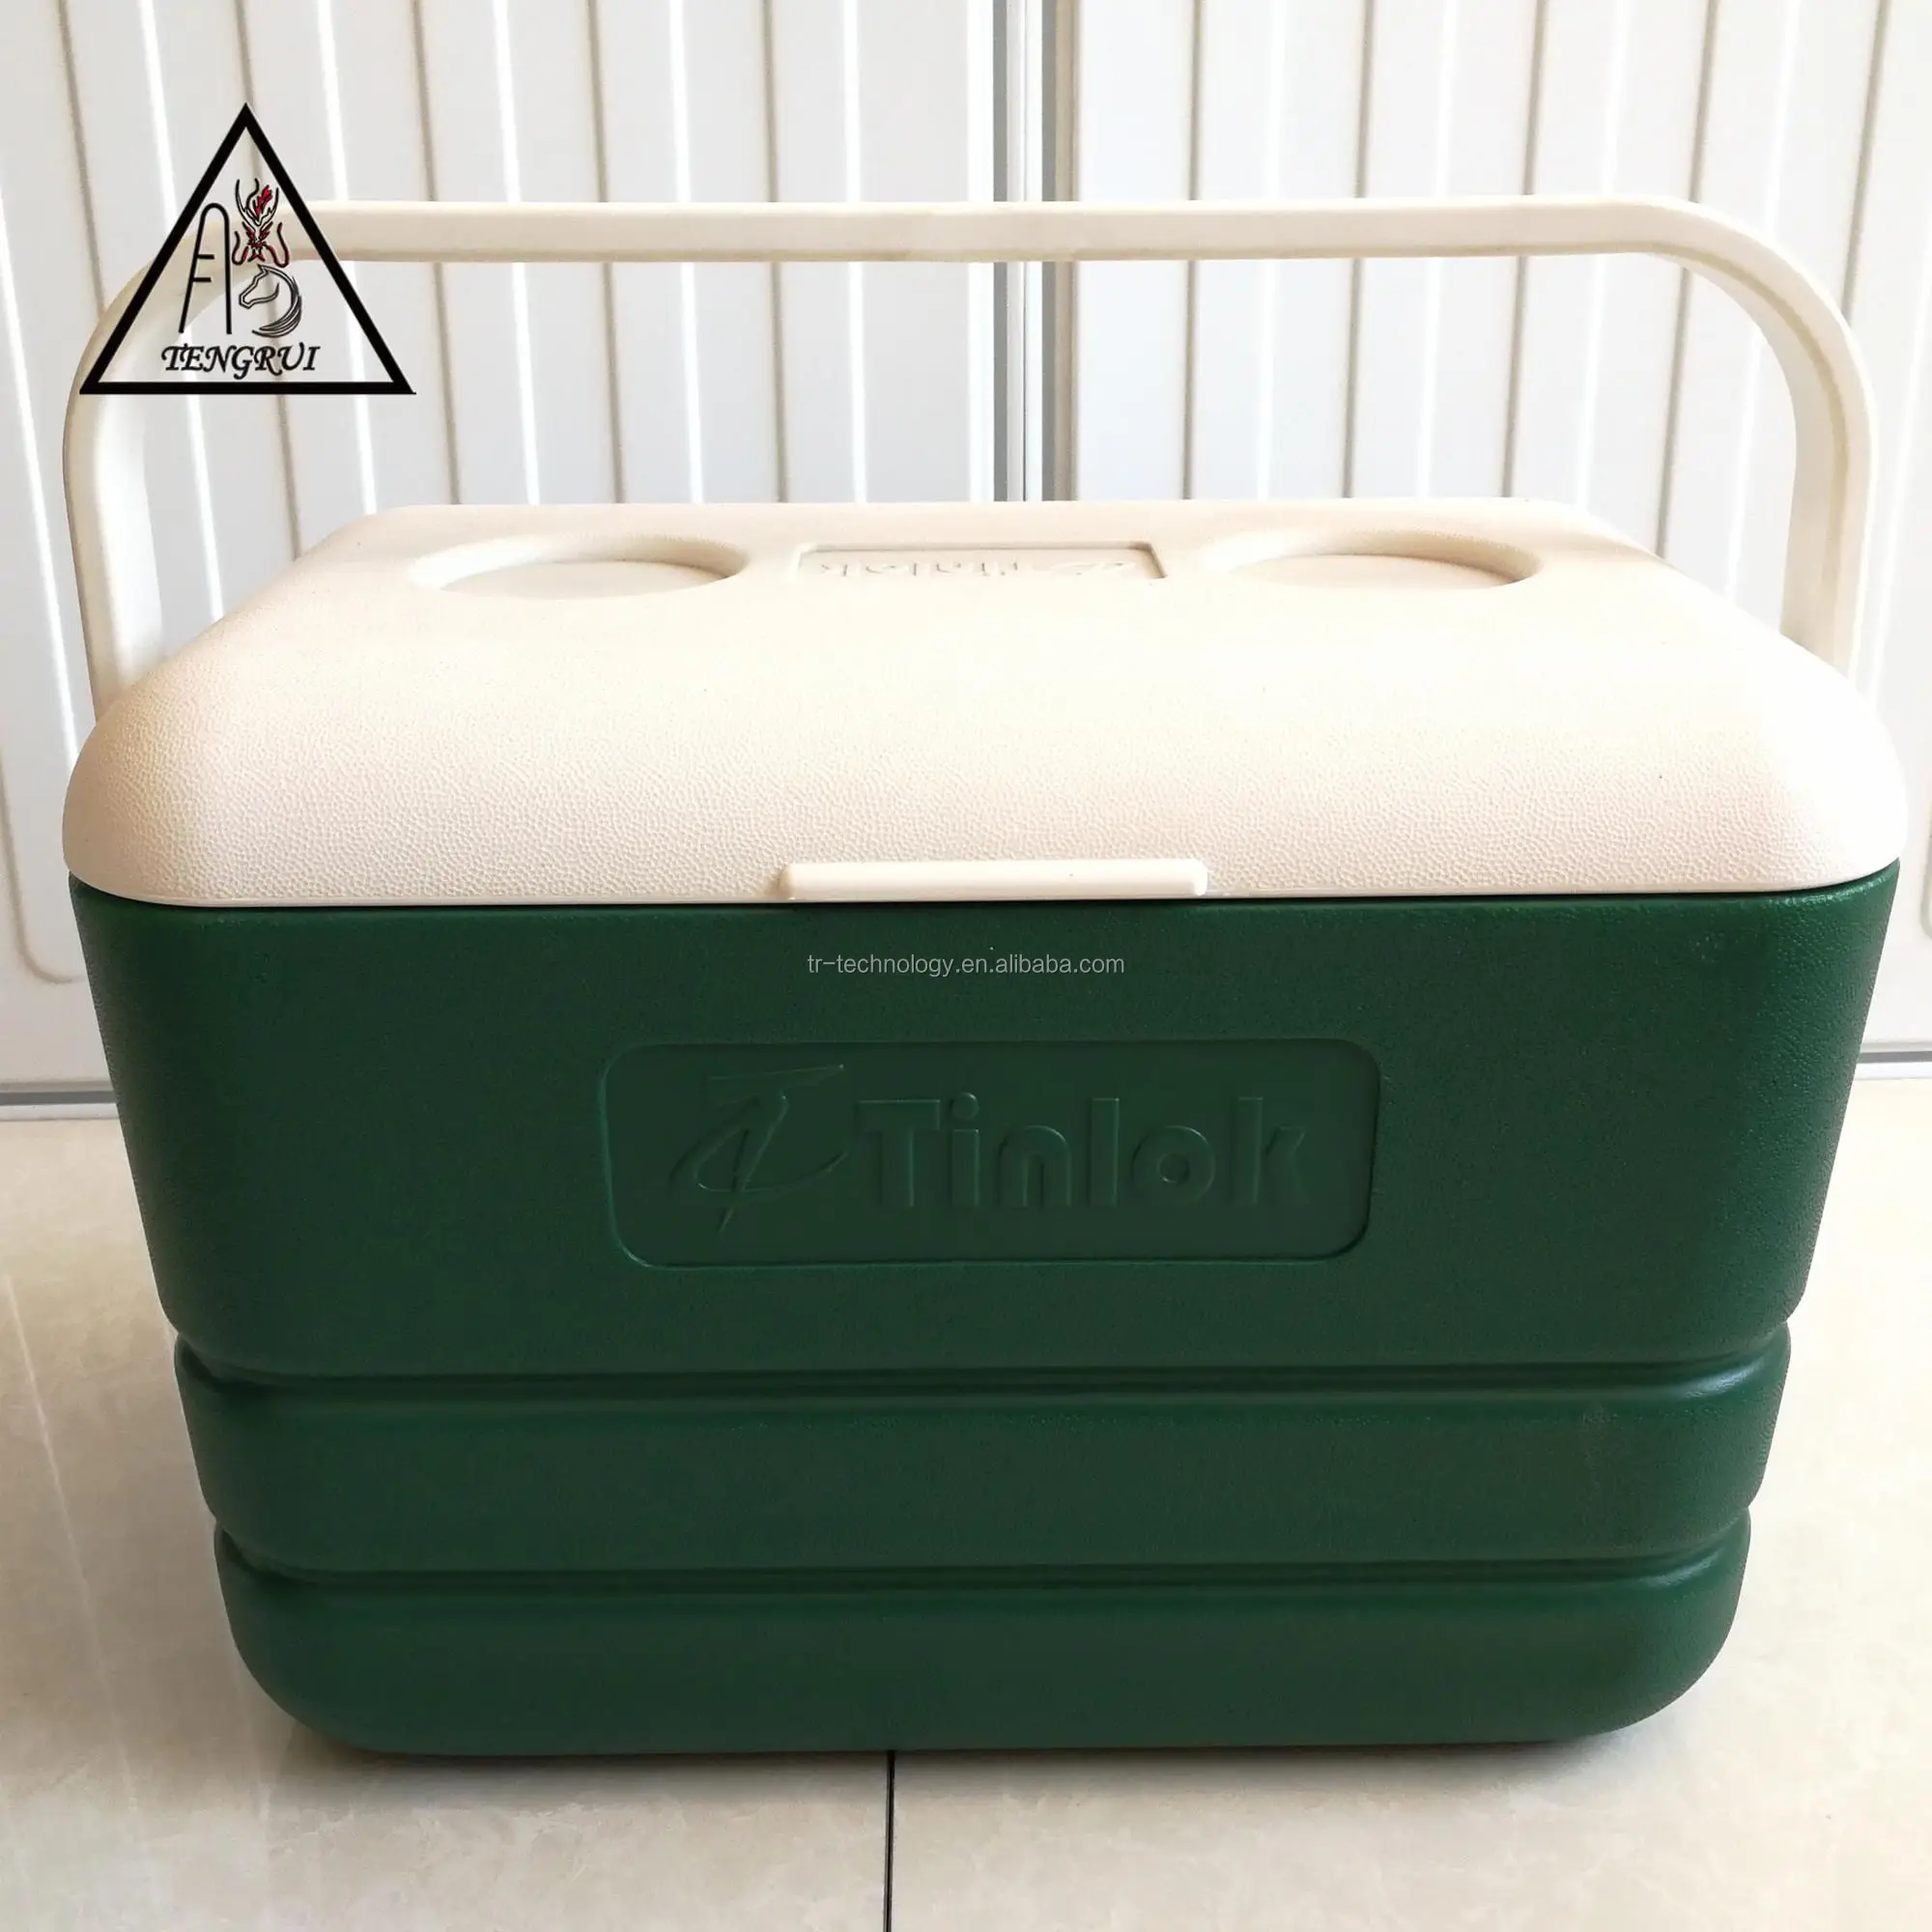 環境にやさしい発泡スチロールクーラーボックス15lアイスクーラーチェスト カップホルダー付き Buy Ice Cooler Box Insulated Cooler Box Outdoor Camping Use Cooler Box Product On Alibaba Com